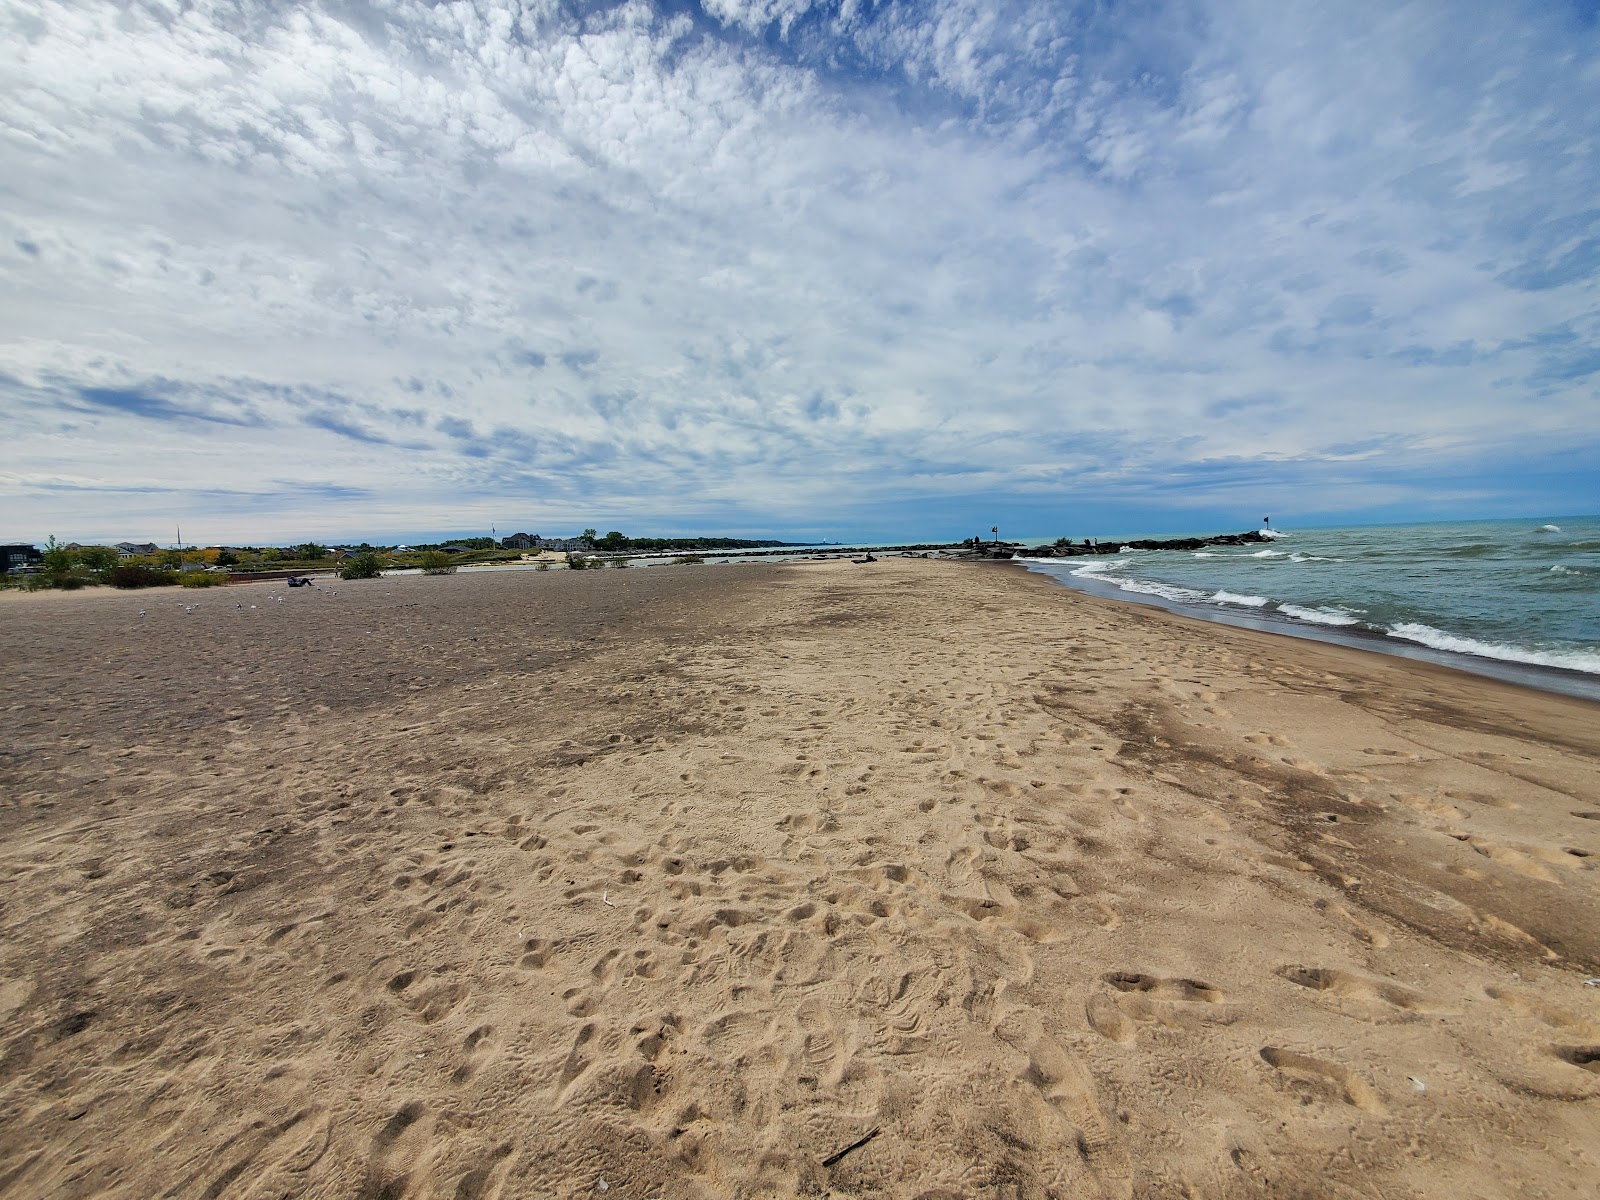 Fotografie cu New Buffalo Beach - locul popular printre cunoscătorii de relaxare